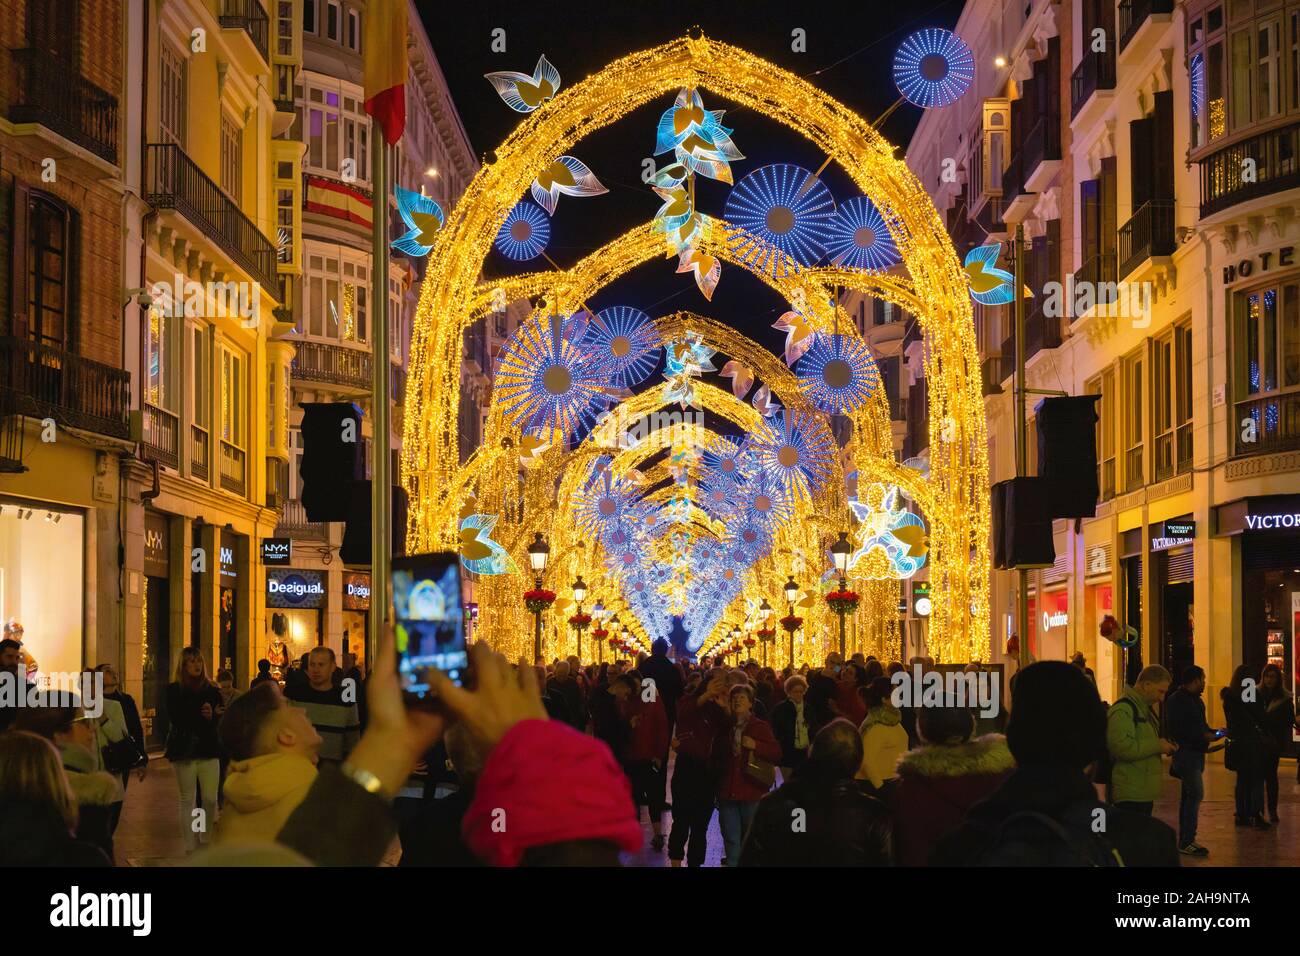 La folla ammirando il Natale luci di strada display in Calle Larios, la strada principale di Malaga, Costa del Sol, provincia di Malaga, Spagna meridionale. Foto Stock